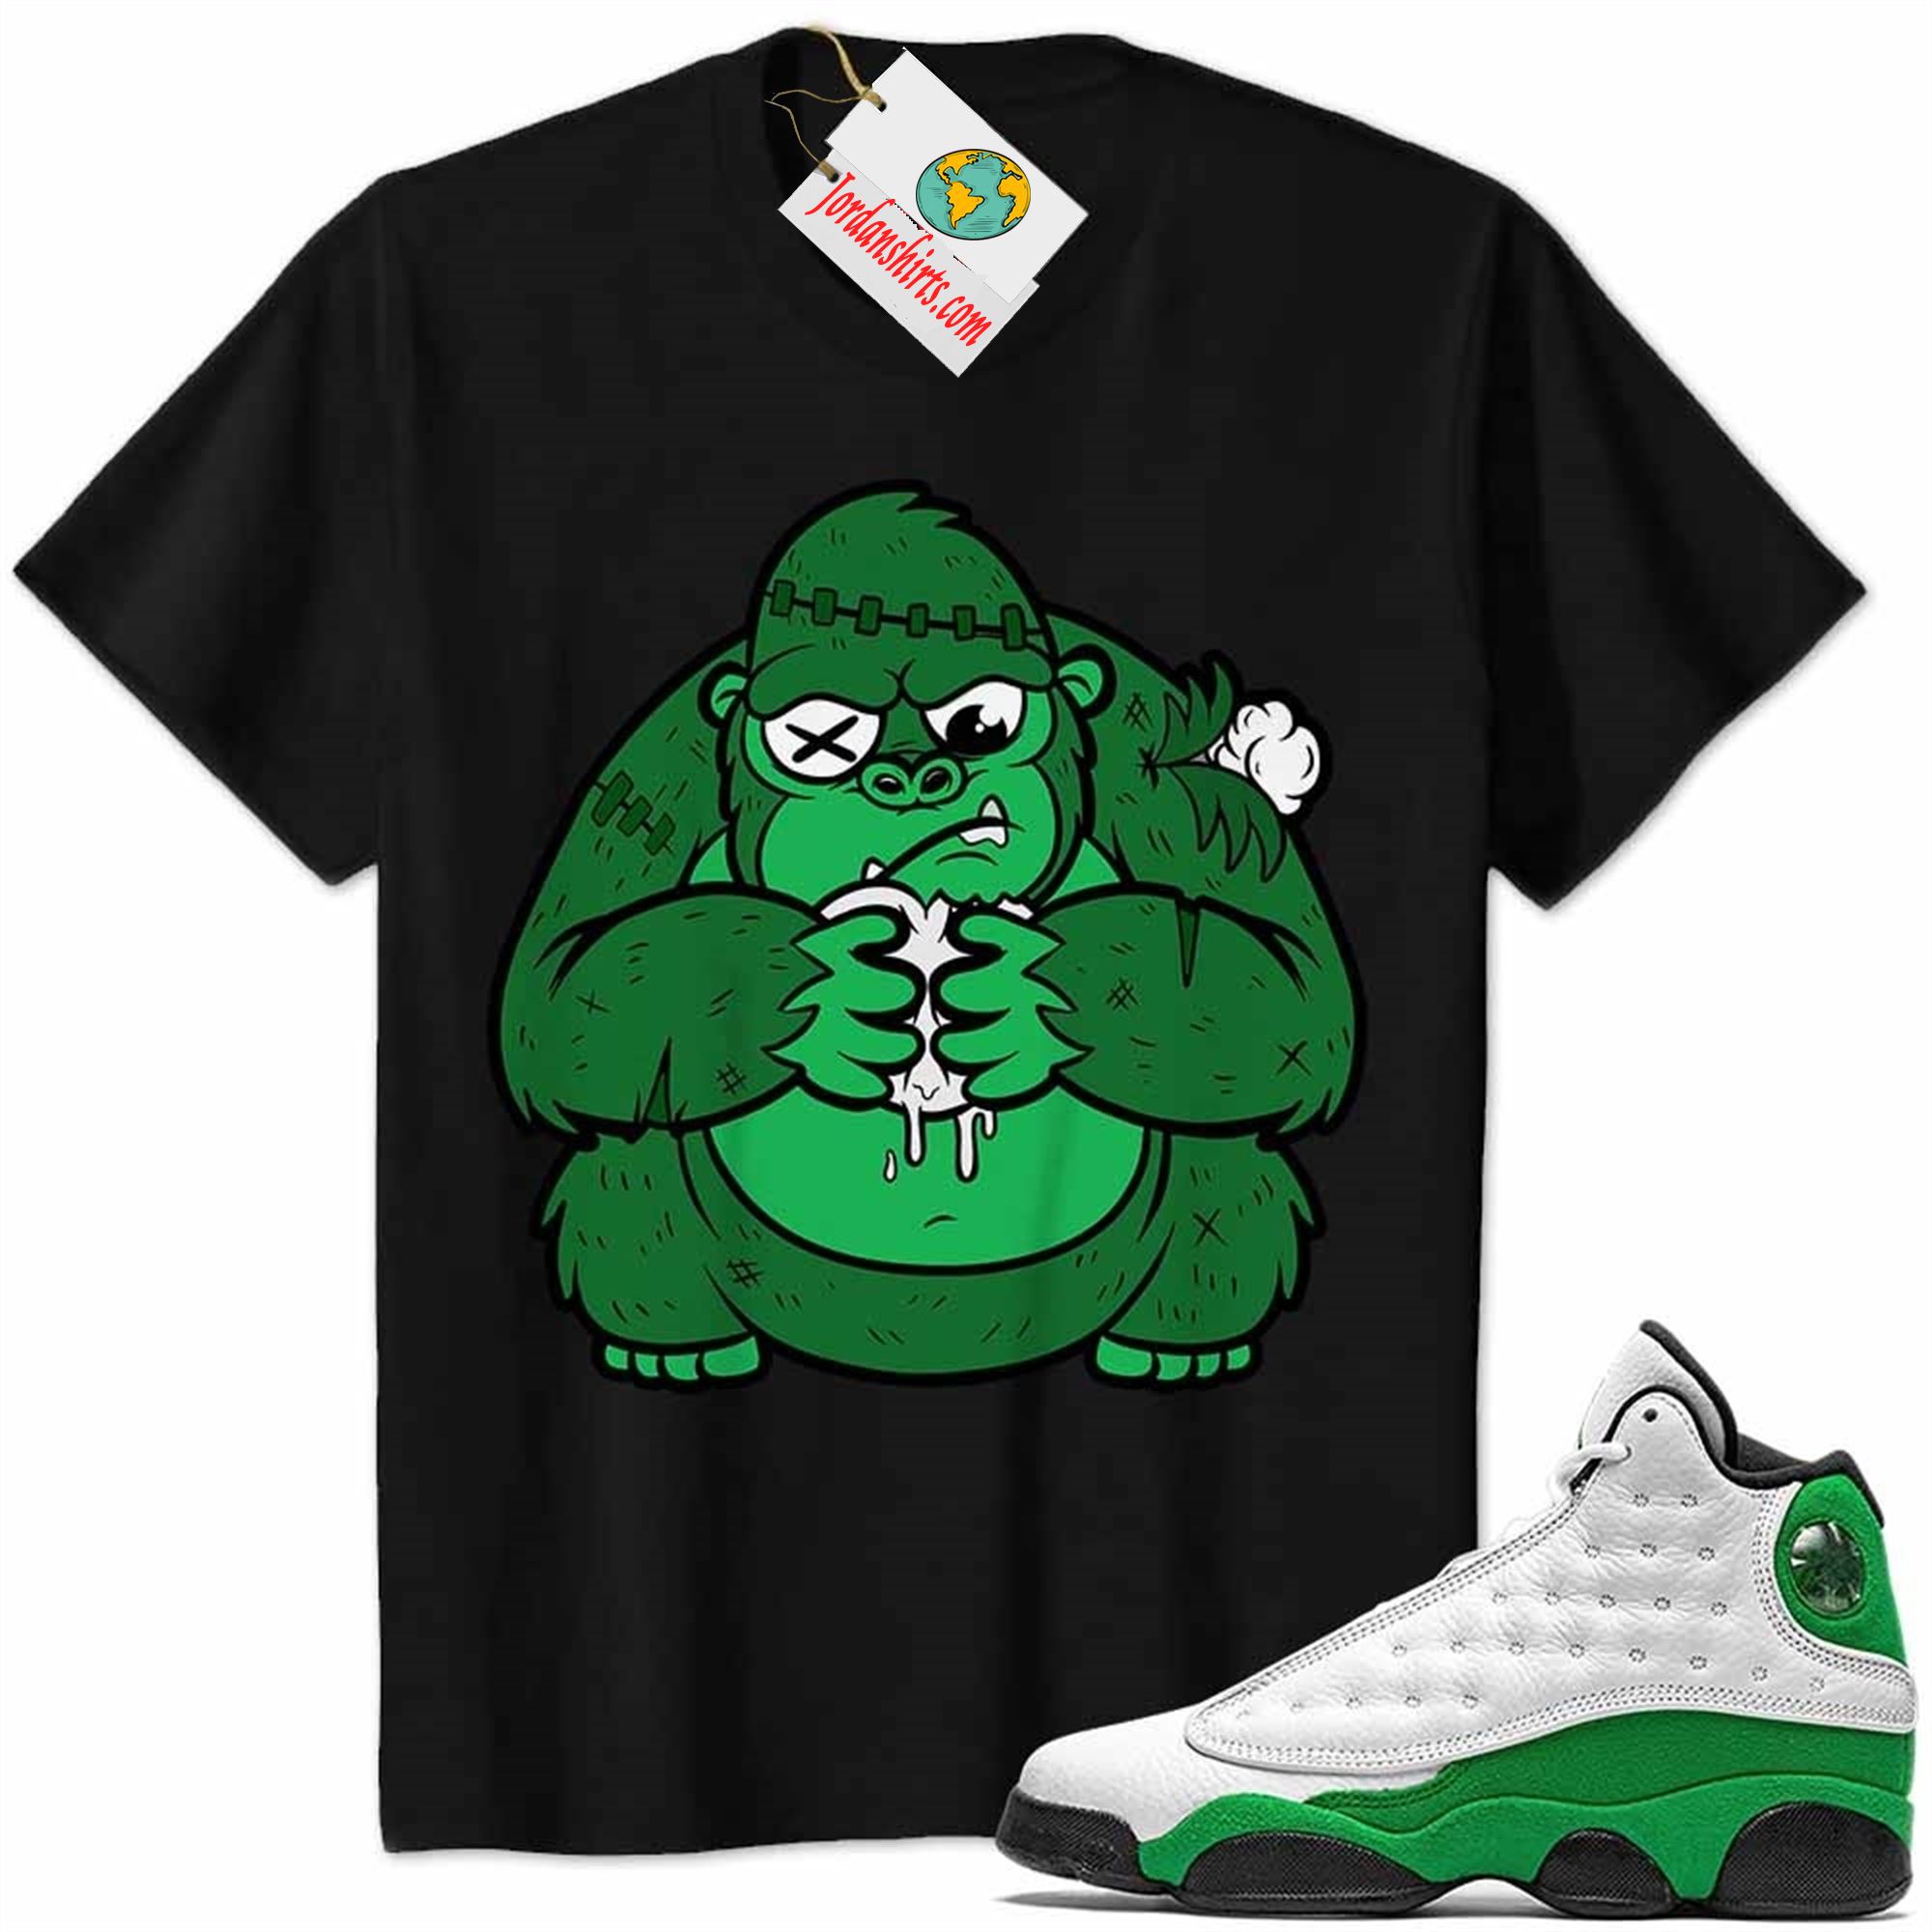 Jordan 13 Shirt, Cute Monkey Broken Heart Black Air Jordan 13 Lucky Green 13s Size Up To 5xl